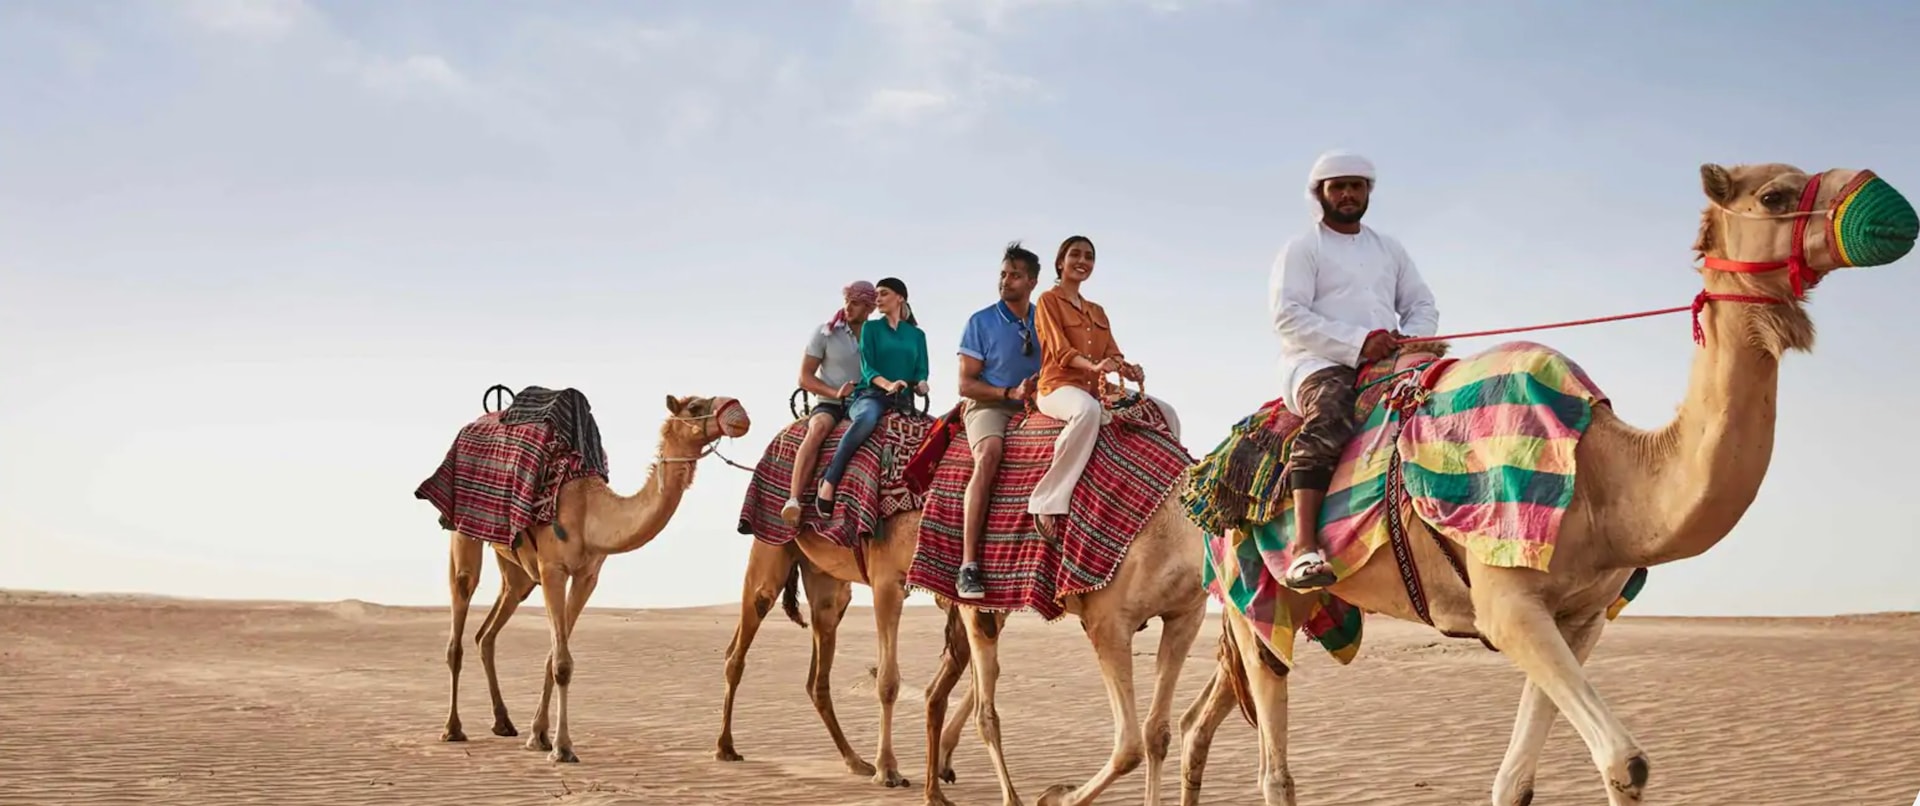 UAE、アラブ首長国連邦、ドバイのインスタ映えスポット、記念撮影スポット、ドバイの砂漠・砂丘